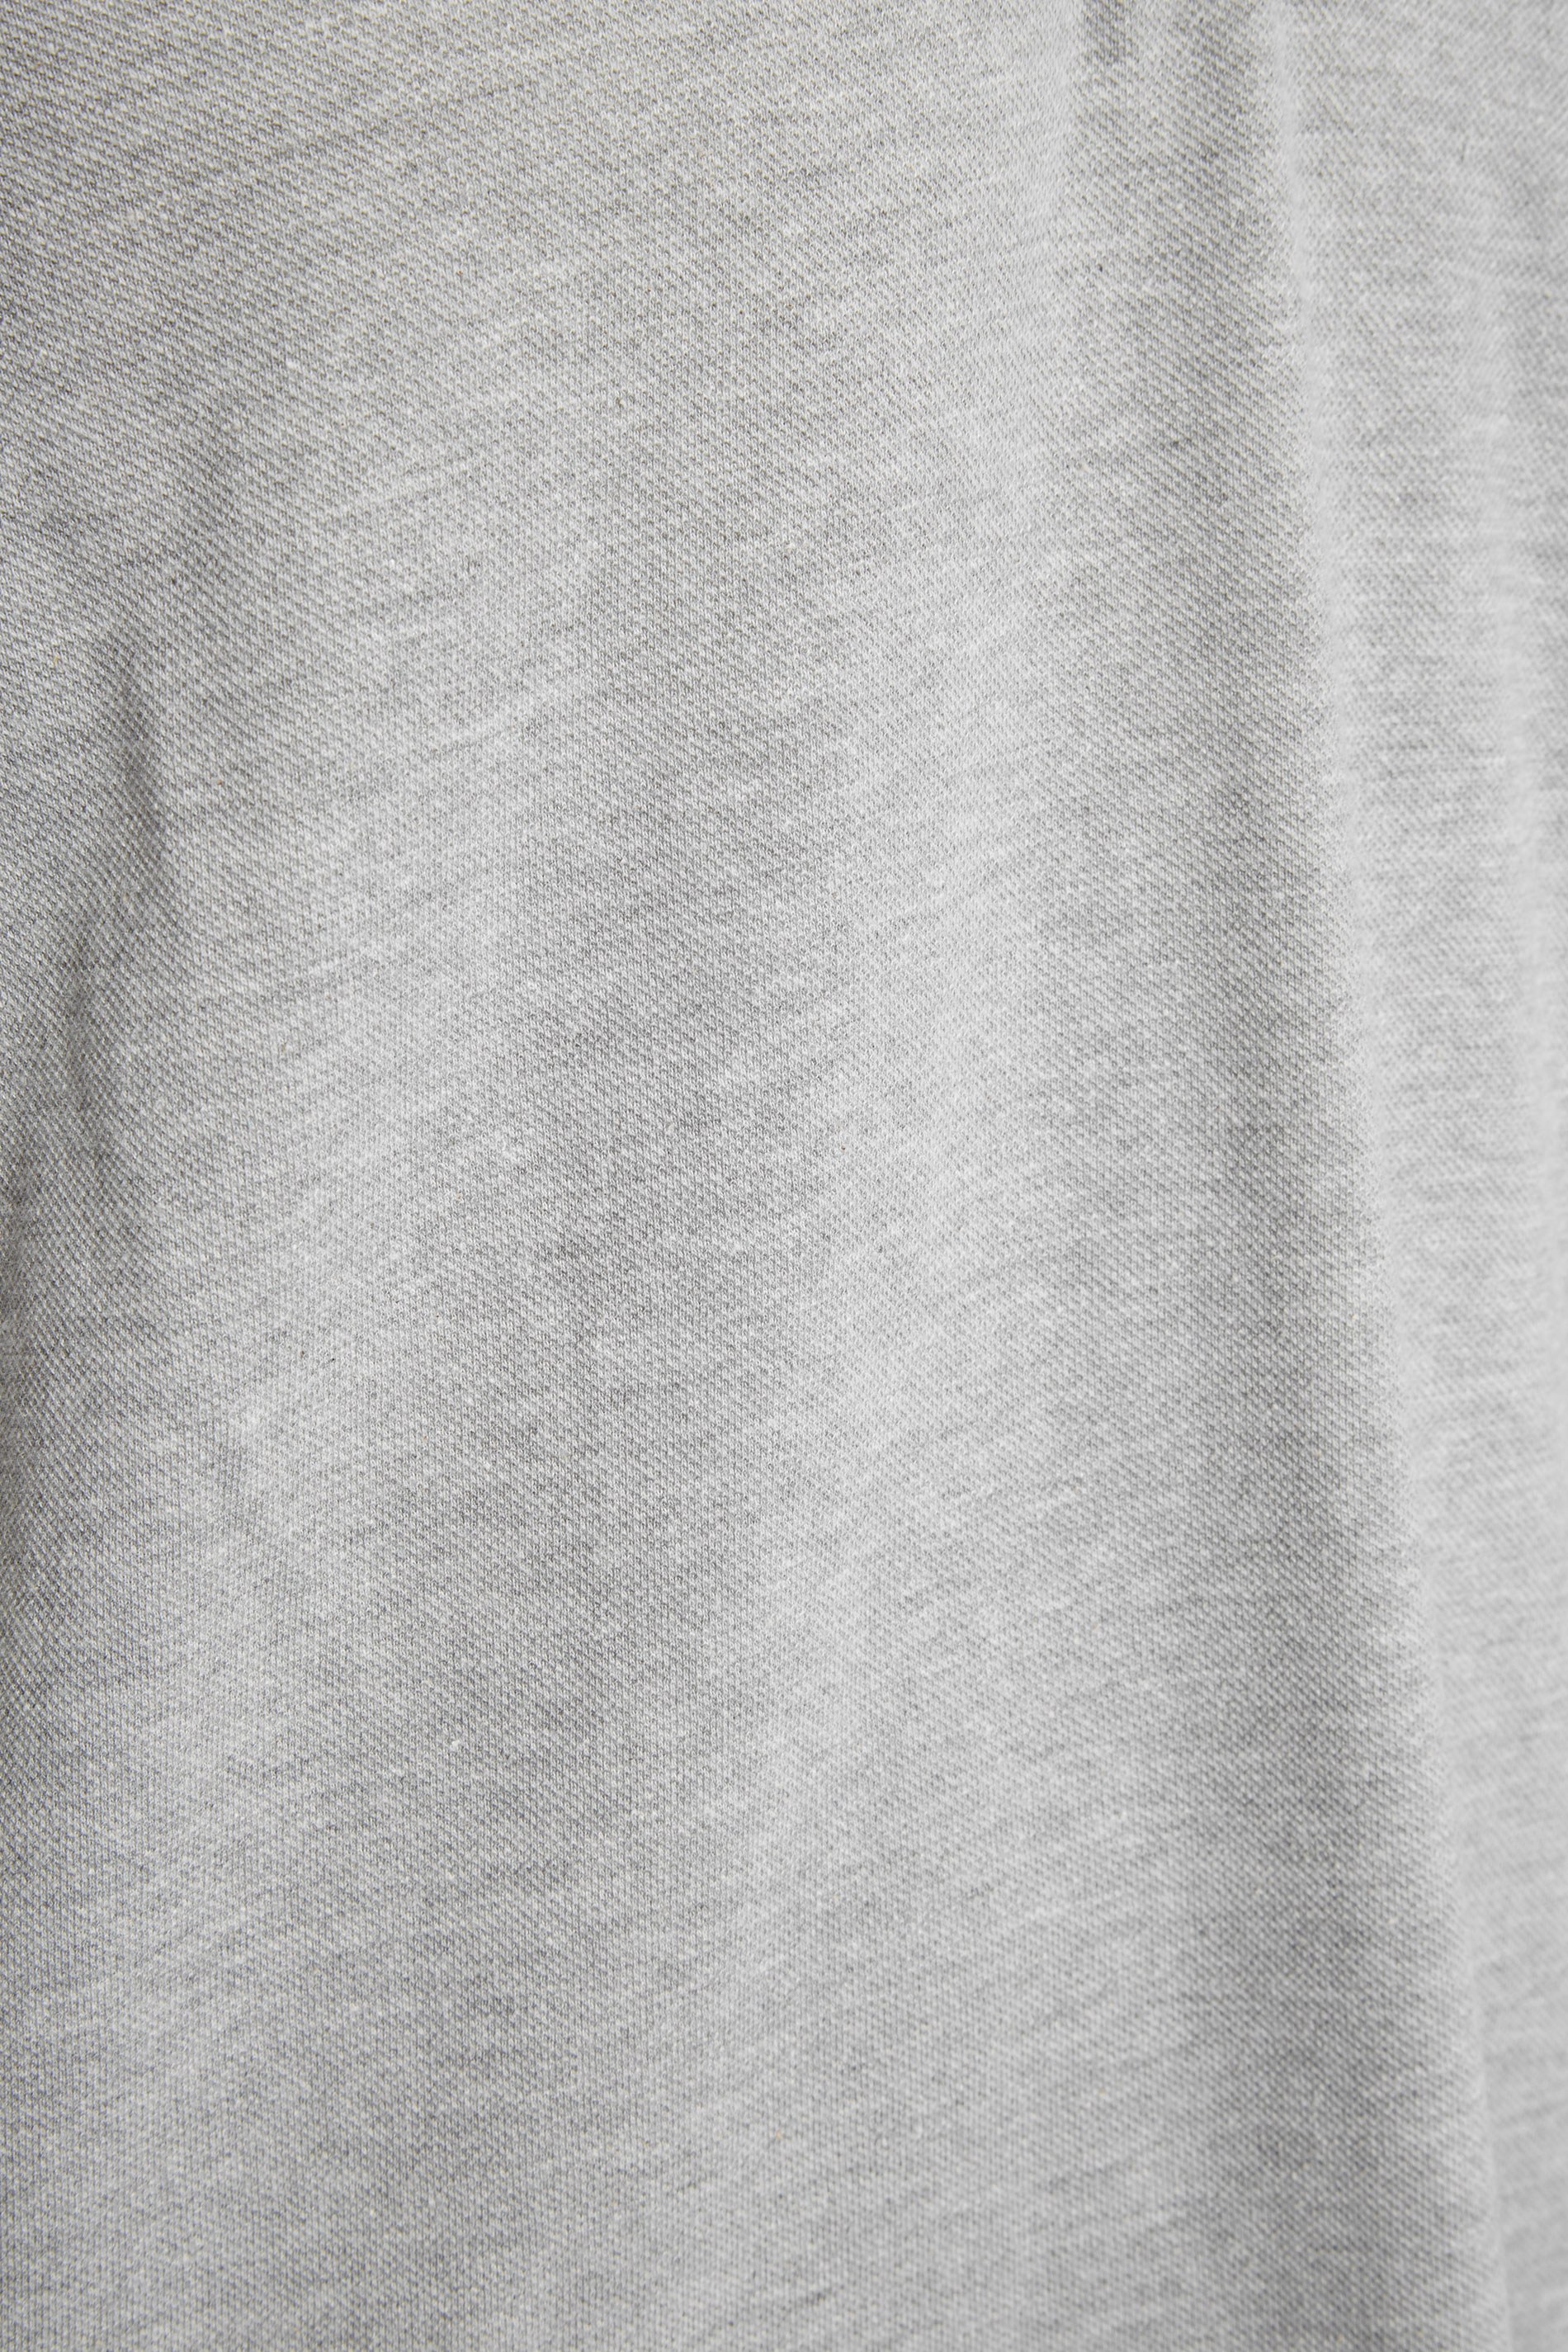 BadRhino Grey Marl Essential Tipped Polo Shirt | BadRhino 2